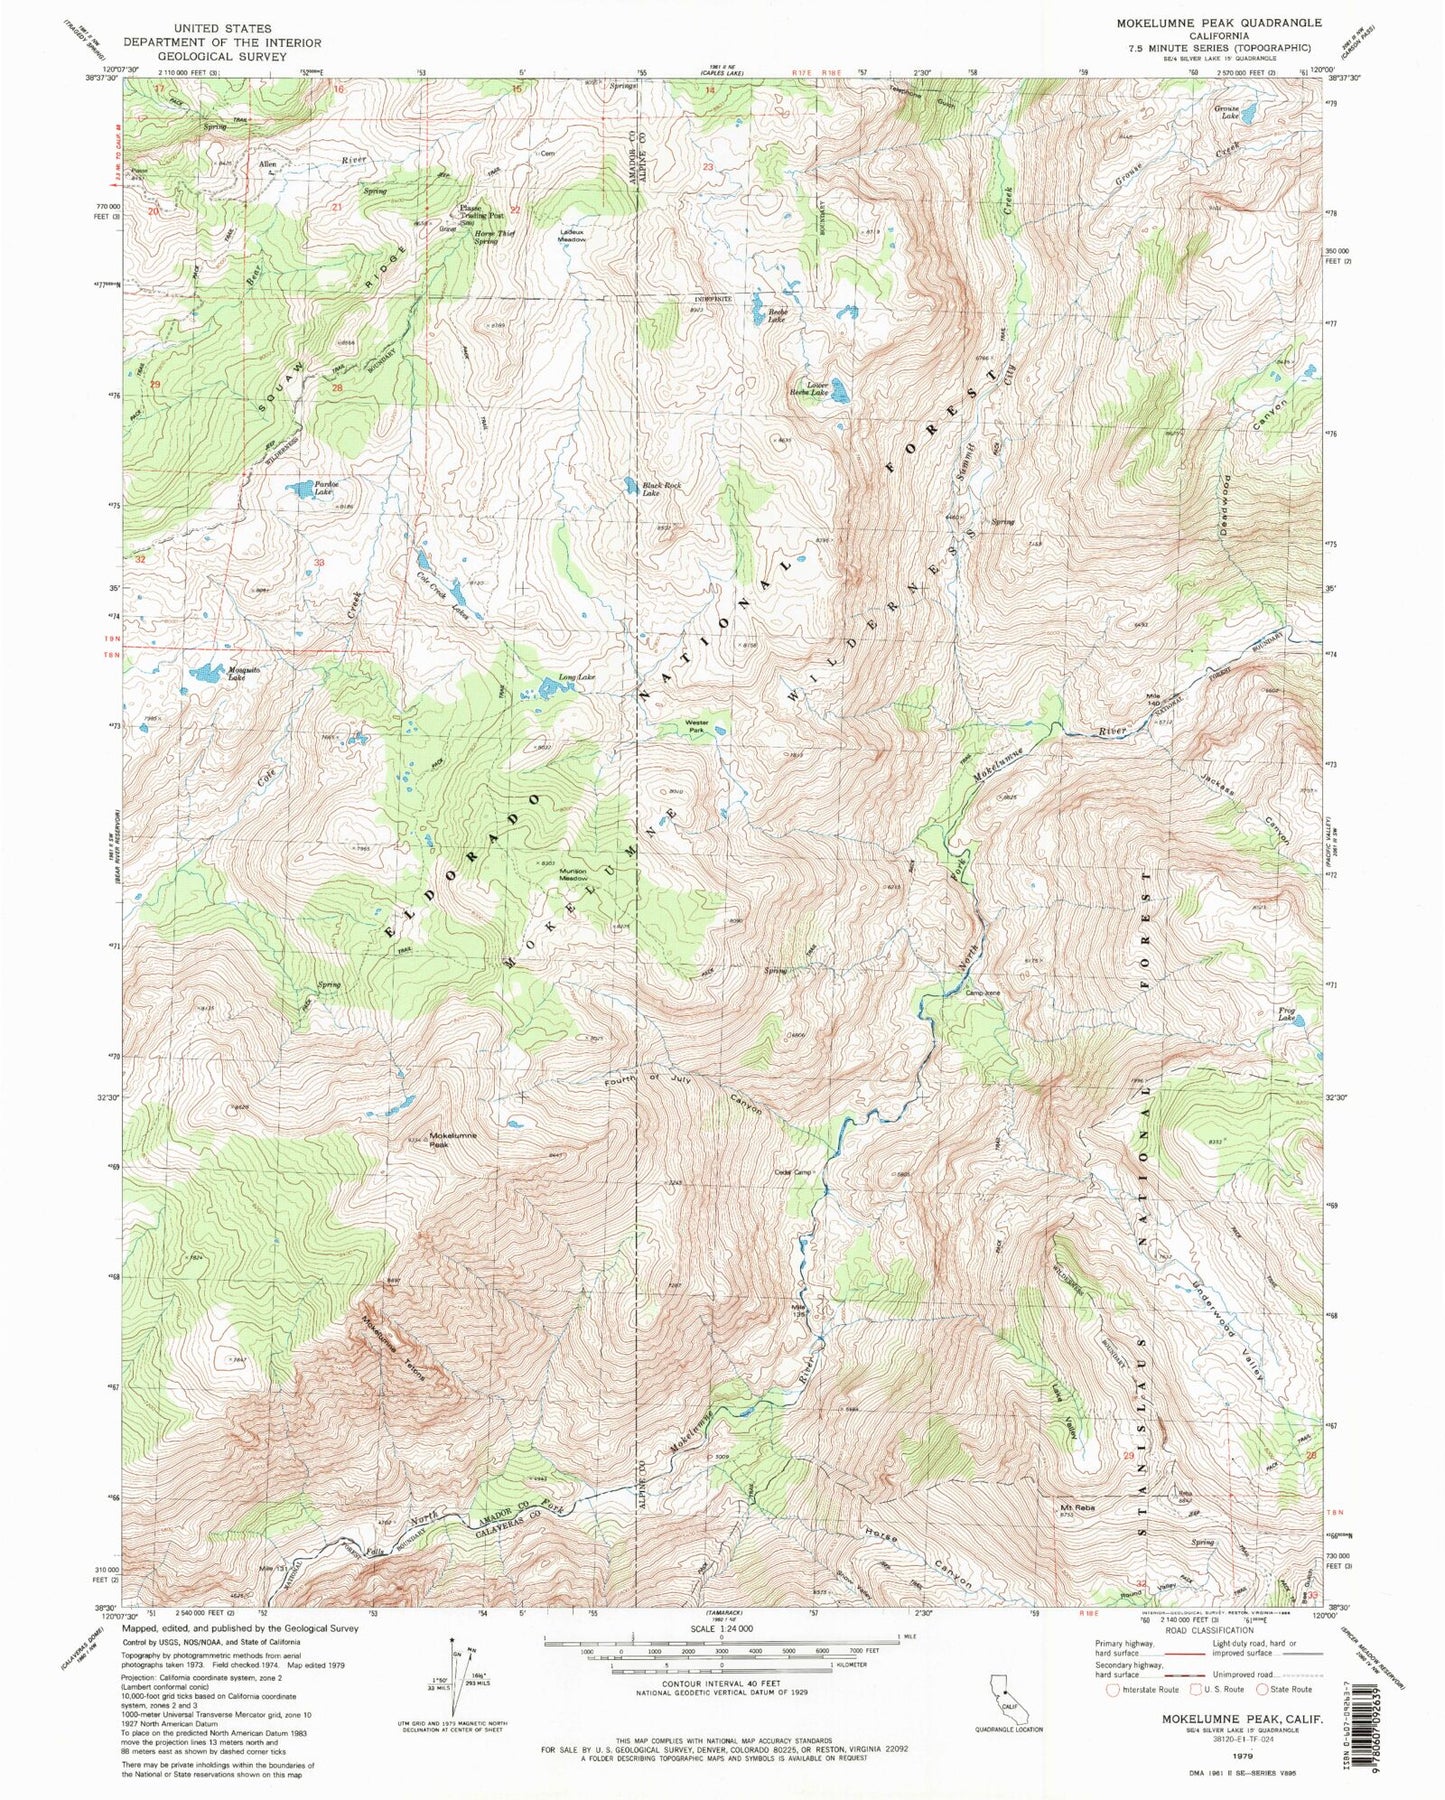 Classic USGS Mokelumne Peak California 7.5'x7.5' Topo Map Image